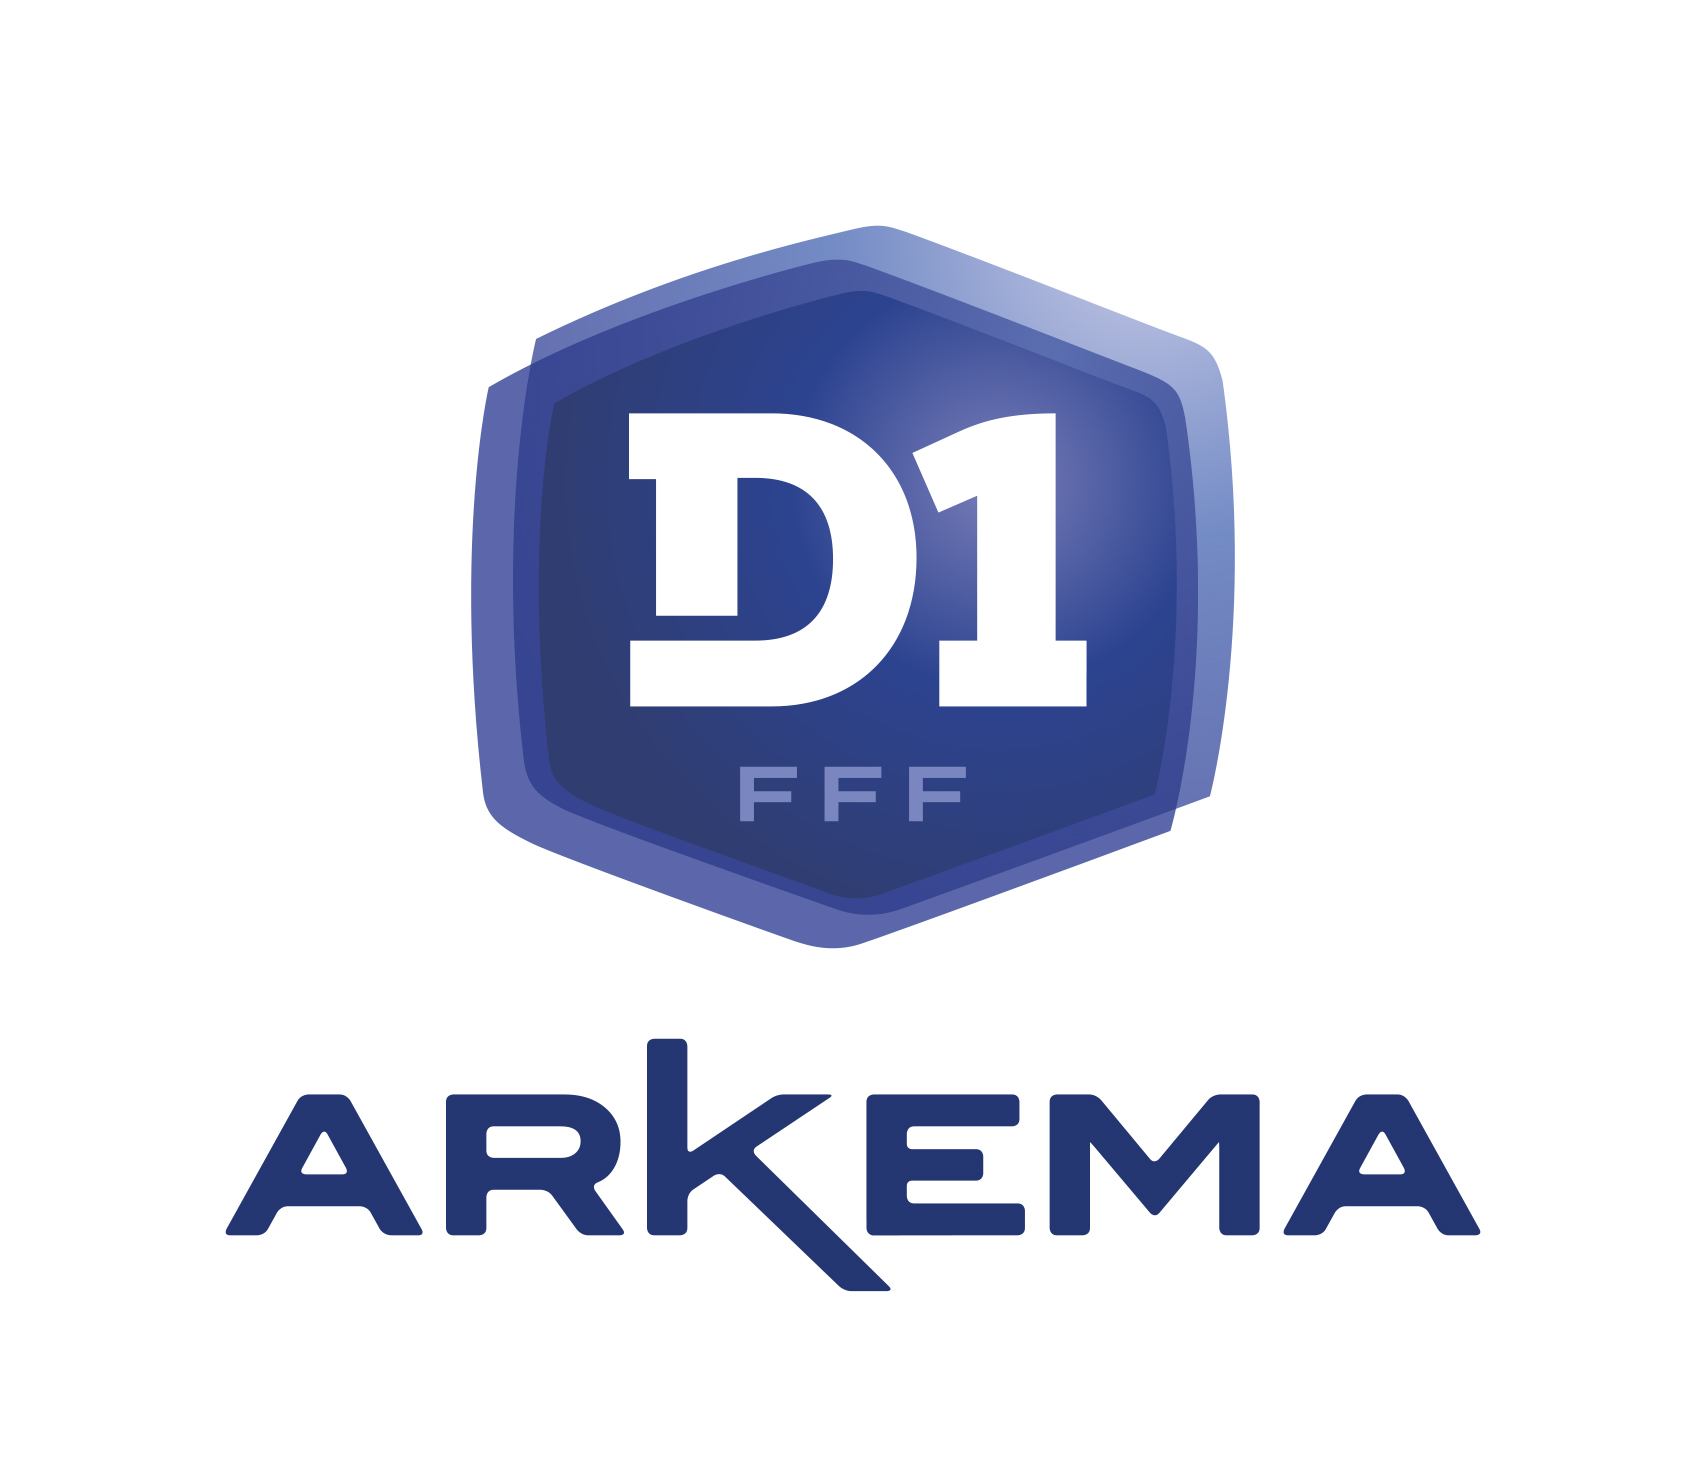 #D1Arkema - J4 : PSG refroidit REIMS dans un match à rejouer